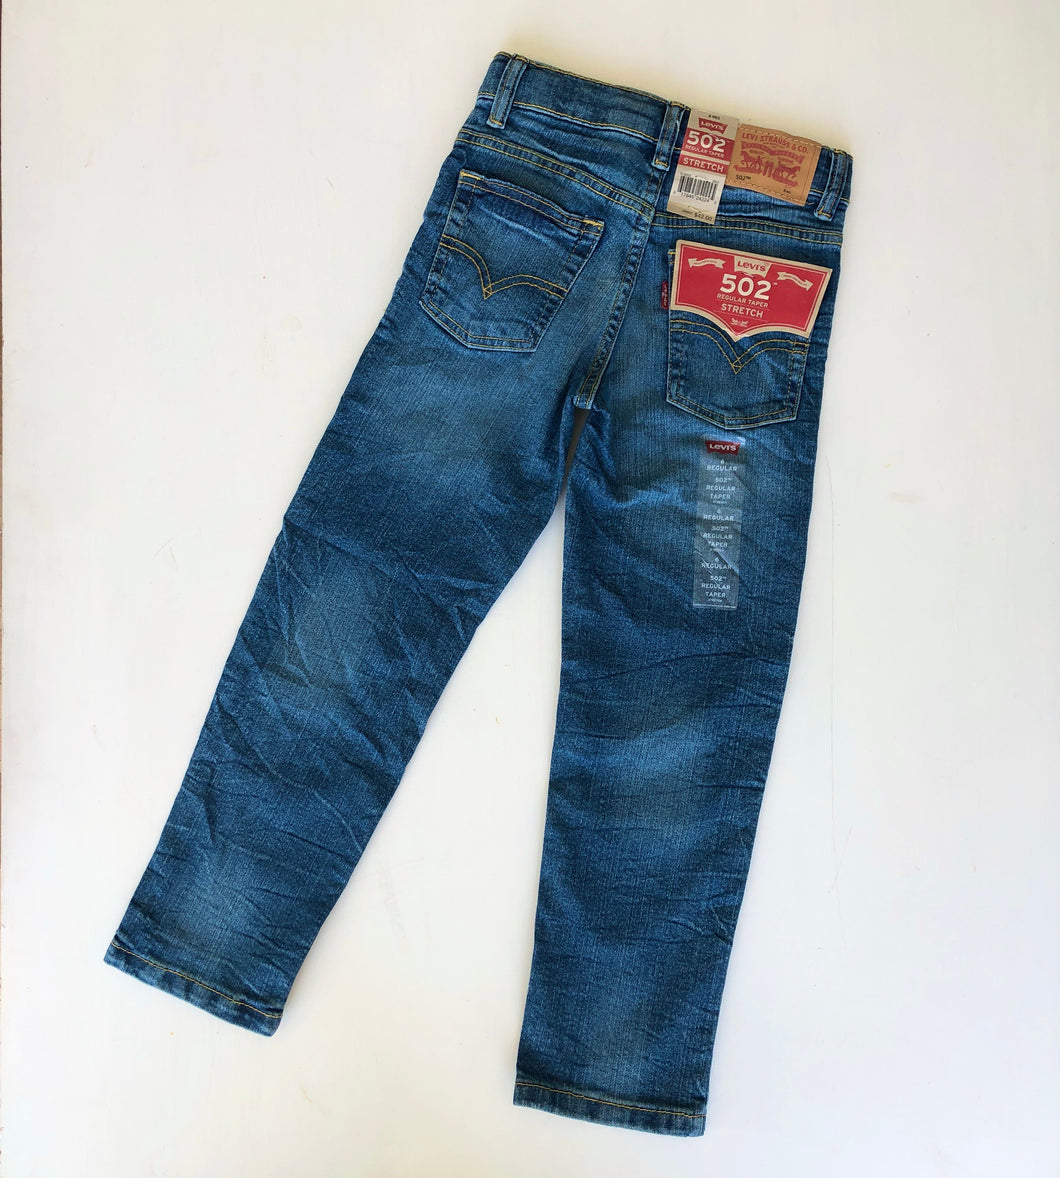 Levi’s 502 jeans (Age 6)